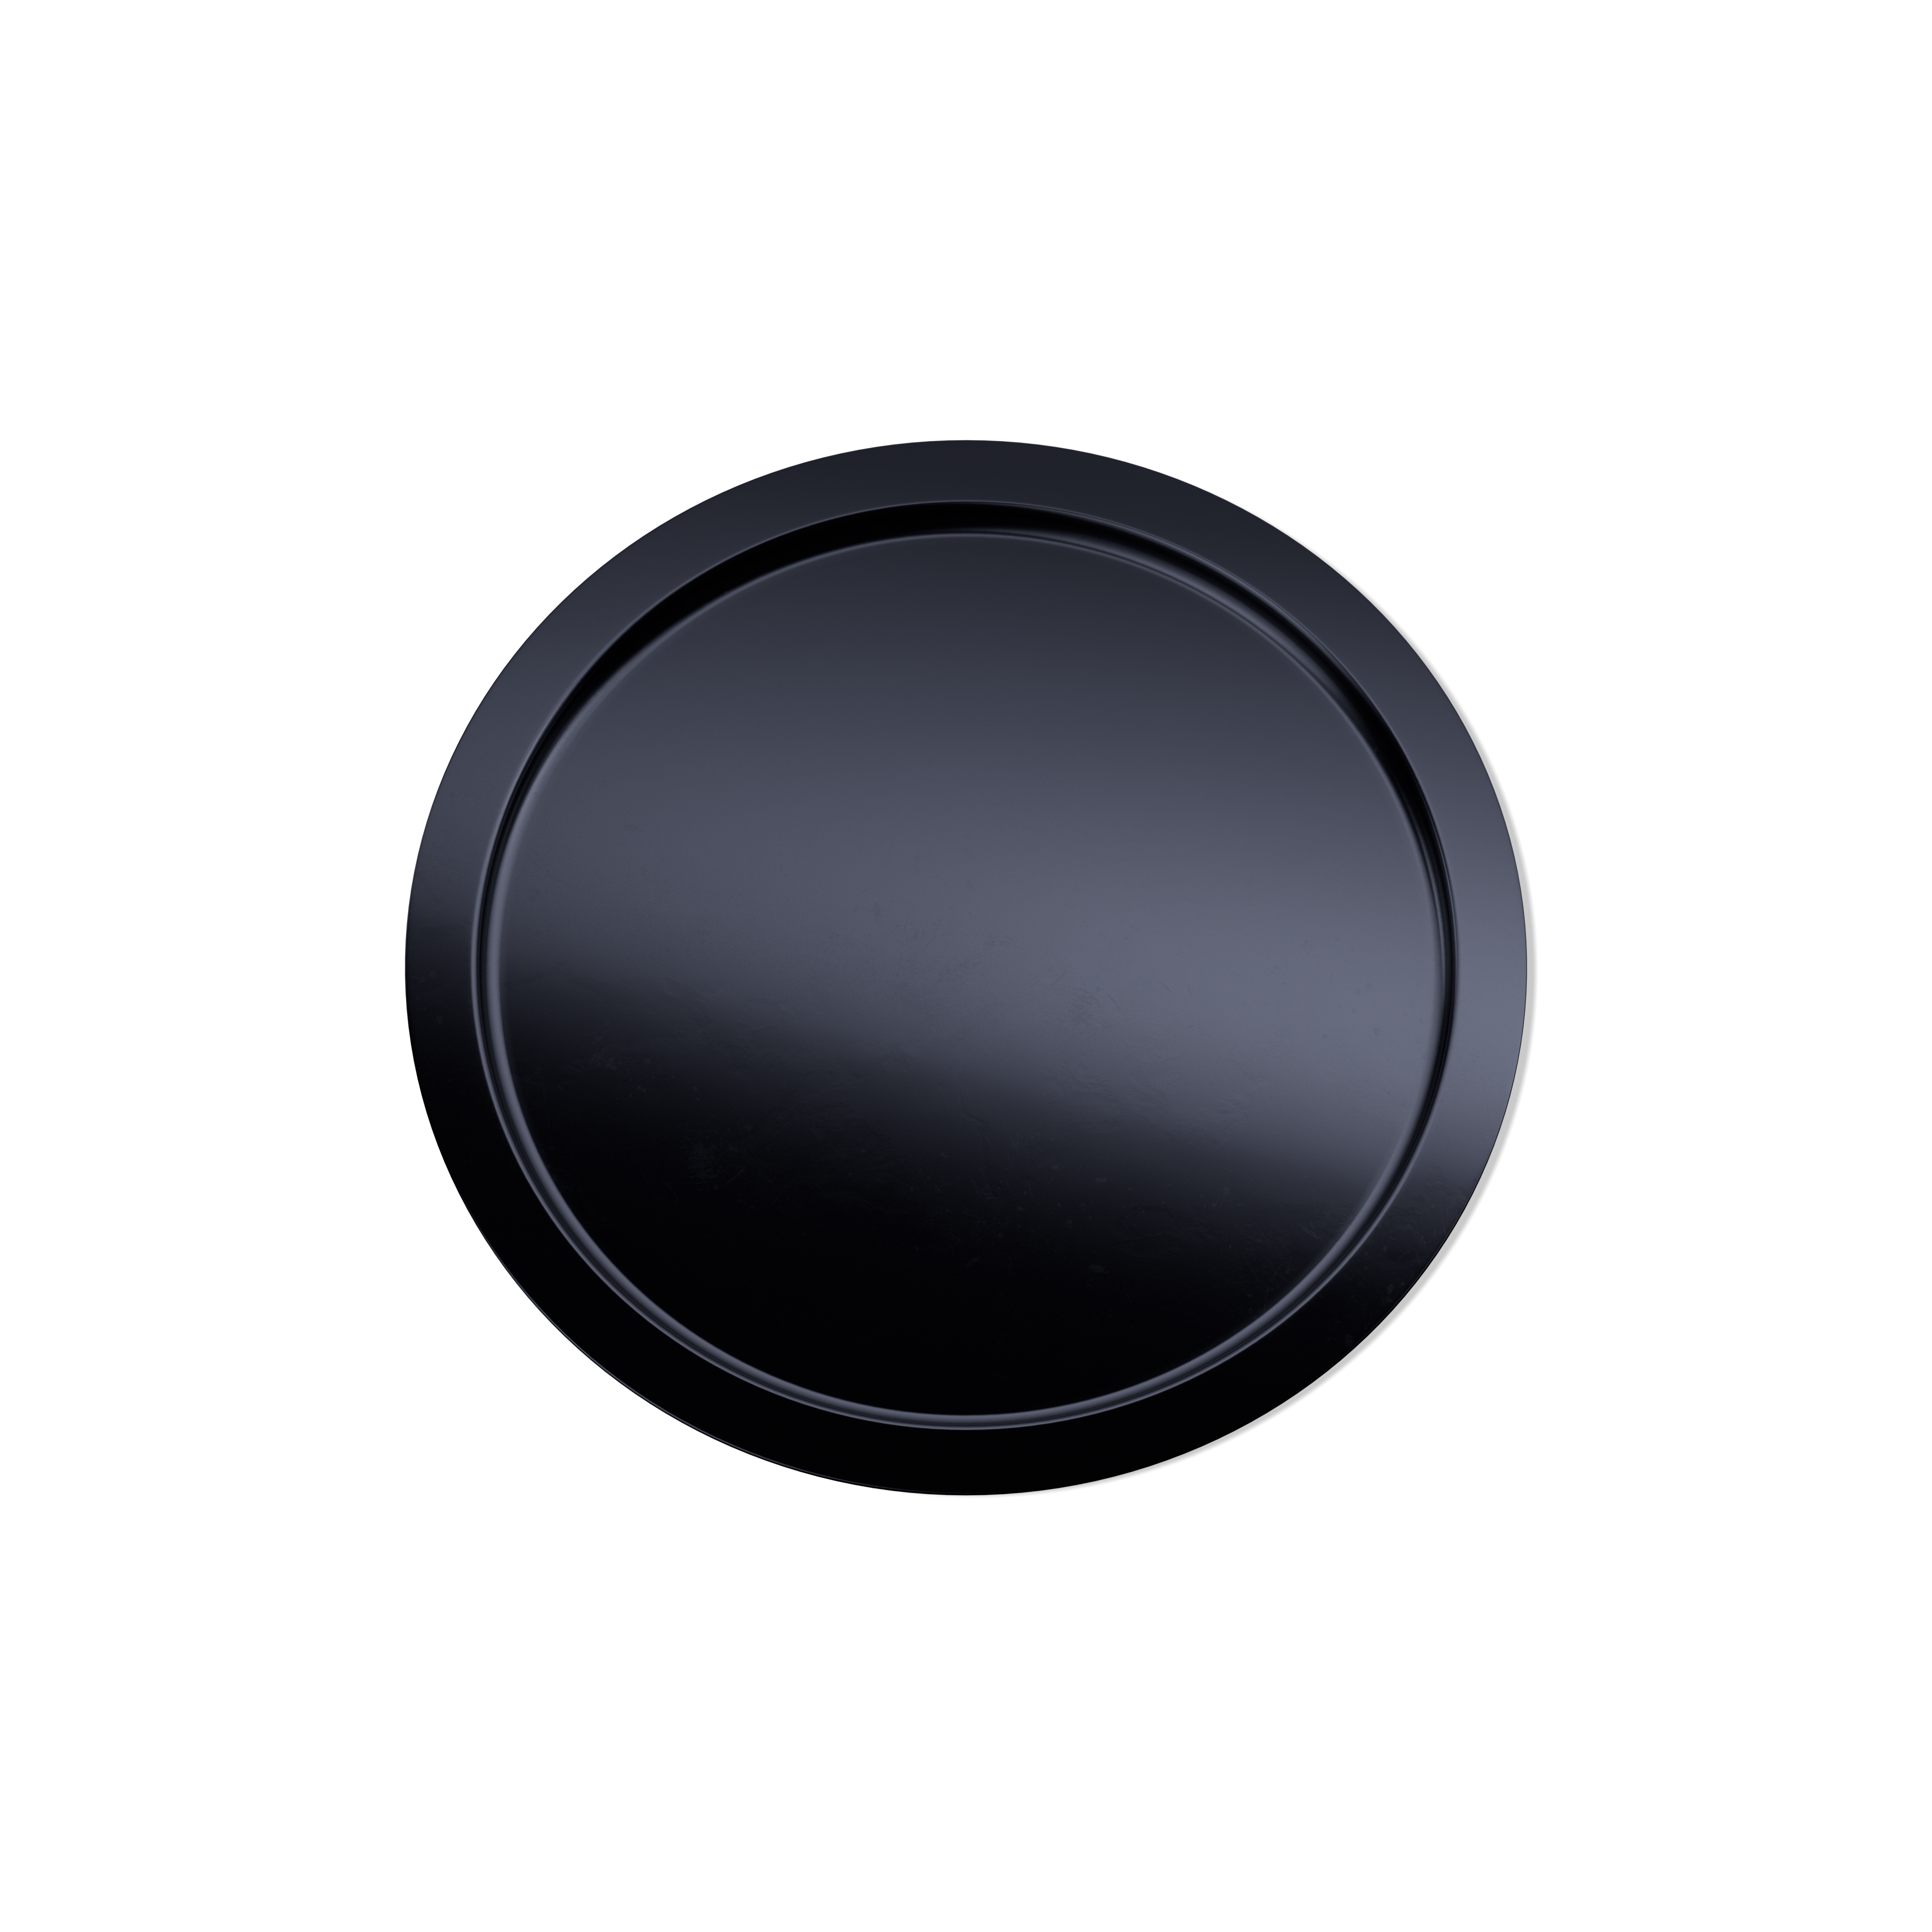 Disc liner, A-pet, black (Sirius 100)